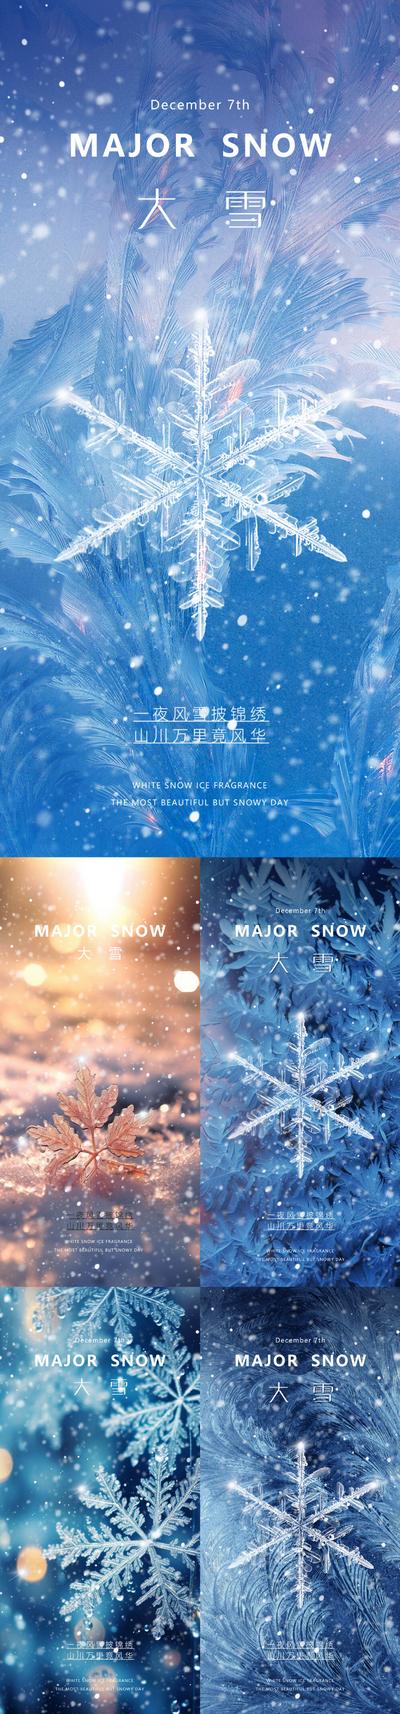 【南门网】广告 海报 地产 大雪 节气 质感 美业 雪花 下雪 冰 朦胧 意境 唯美